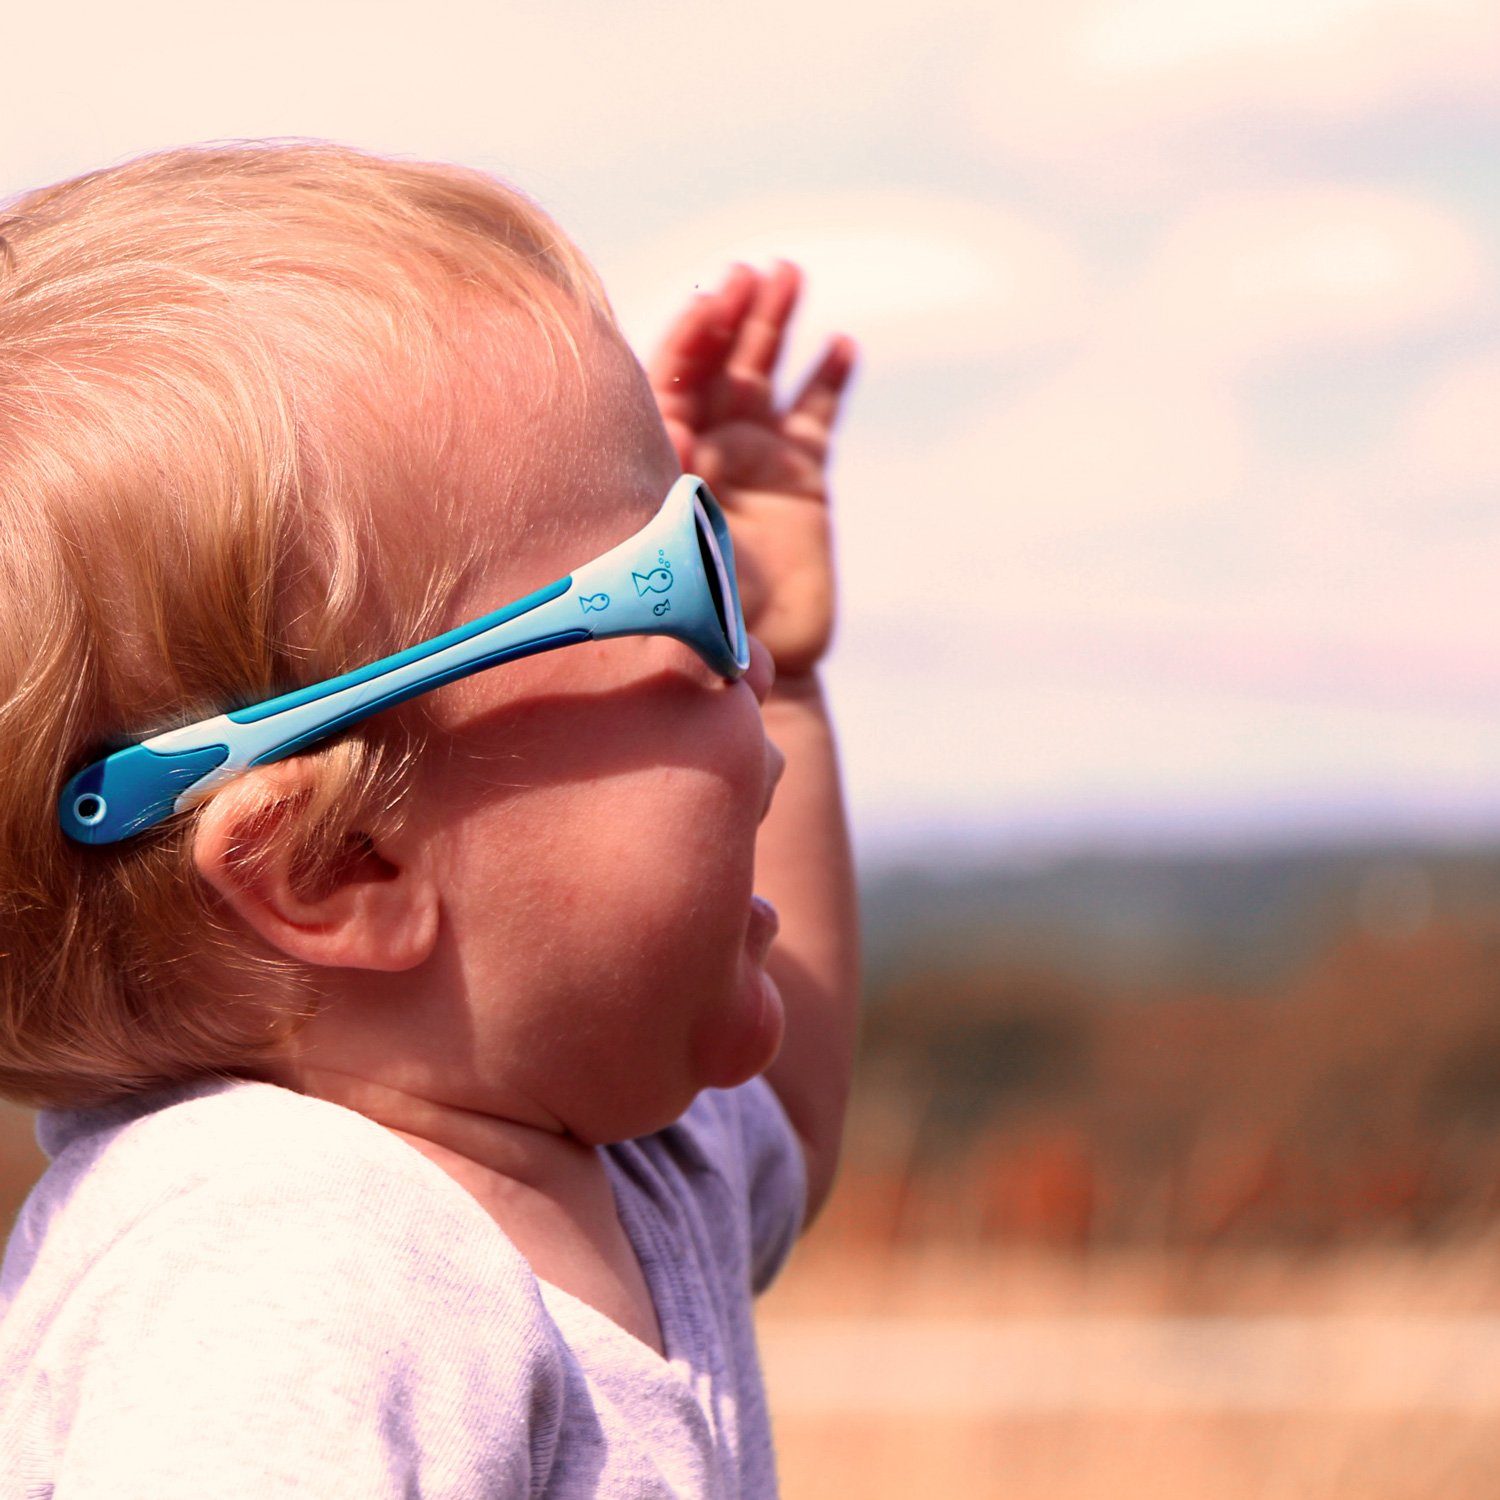 & & Motiven) Baby Farben (in Jahre 0-2 Sonnenbrille pfiffigen bunten Jungen mit SUNGLASSES Flexibel Unzerstörbar Sonnenbrille, Fish & ActiveSol Mädchen,